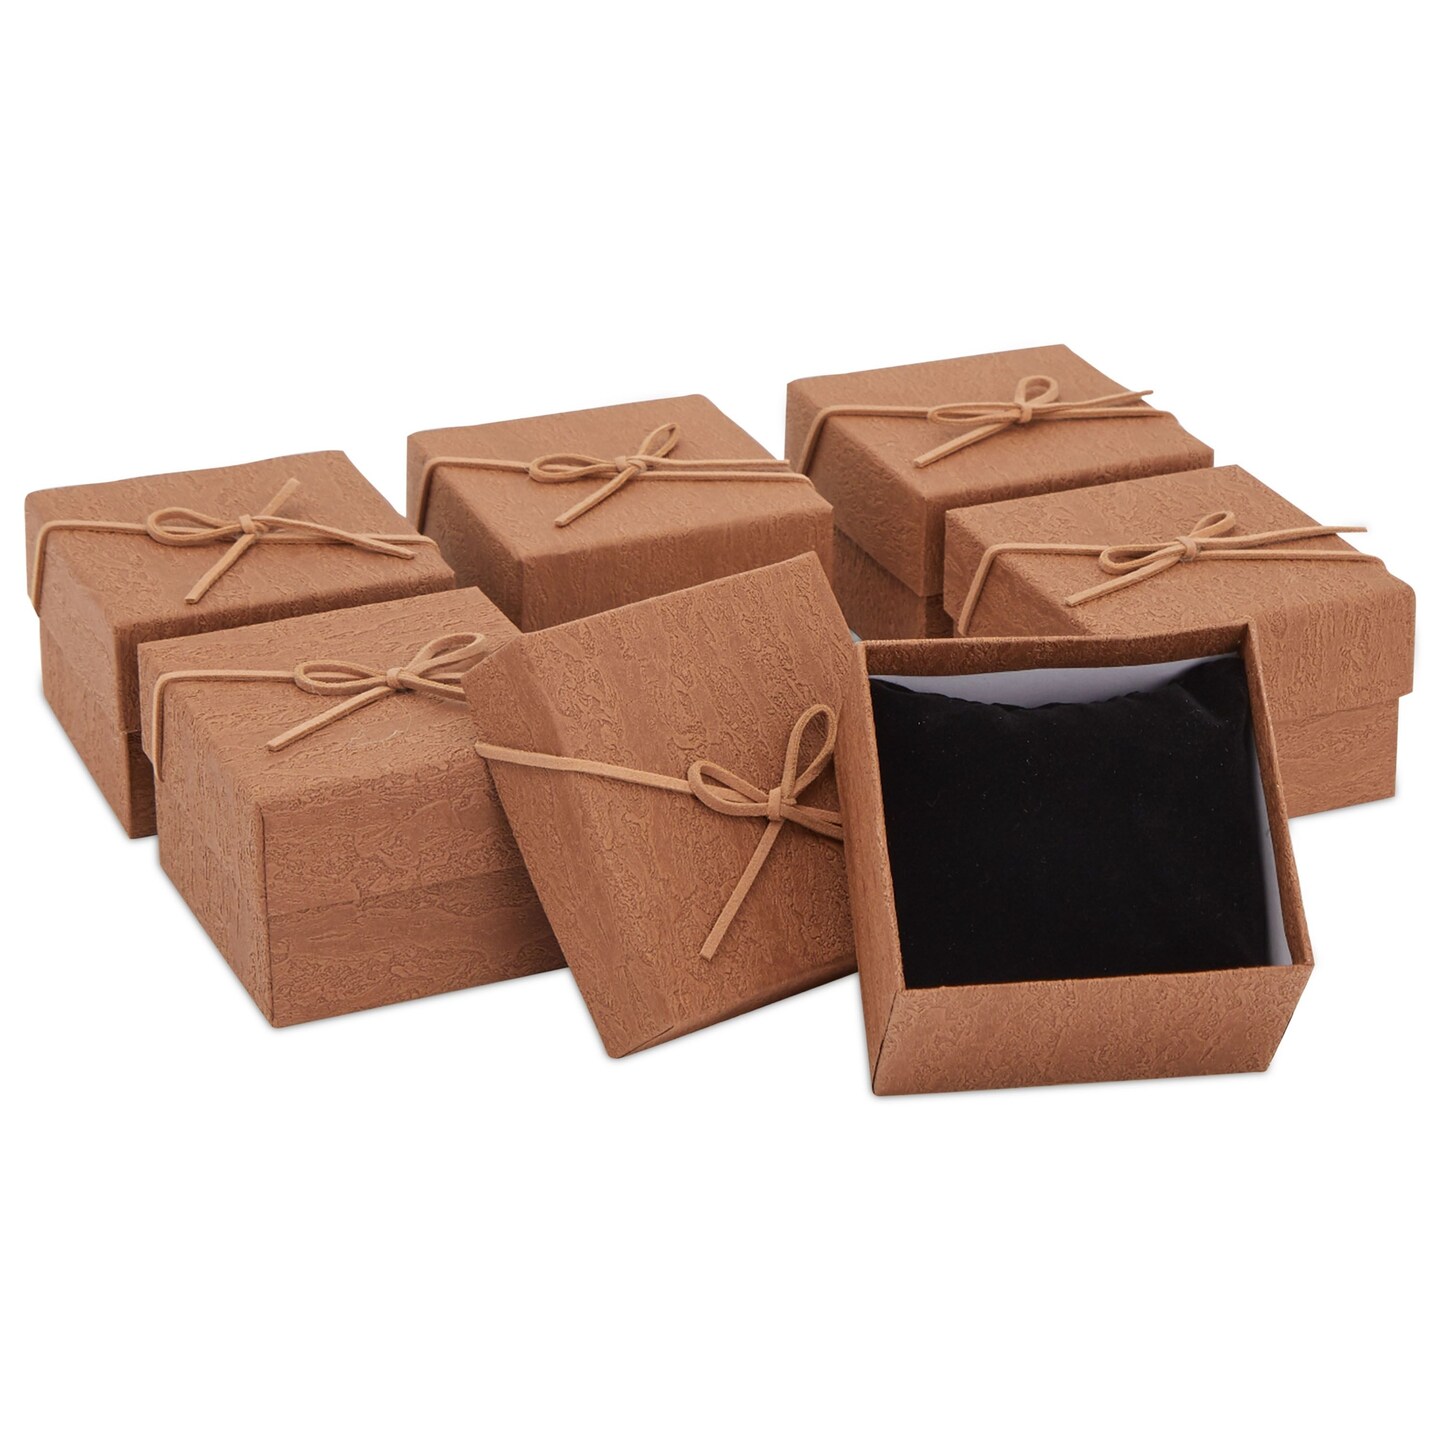 White XL Deep Gift Boxes no ribbon